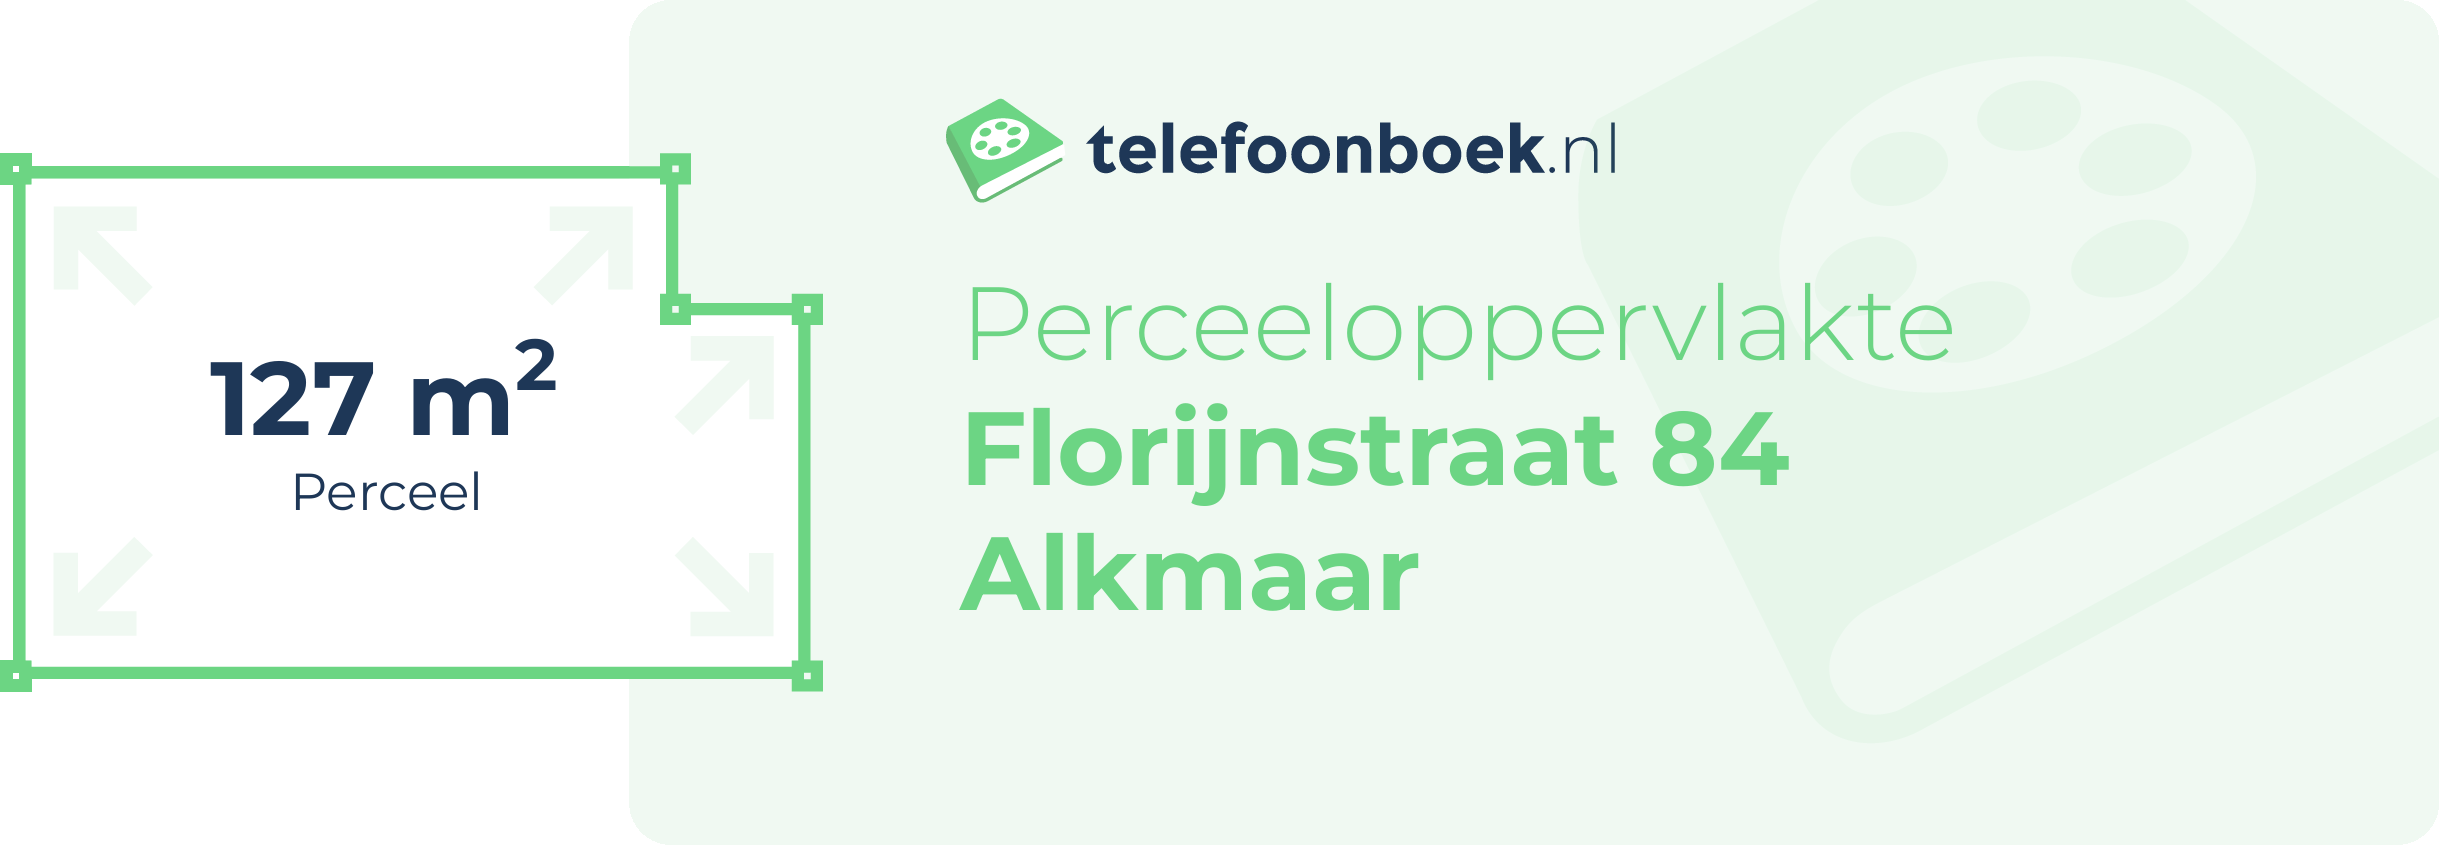 Perceeloppervlakte Florijnstraat 84 Alkmaar